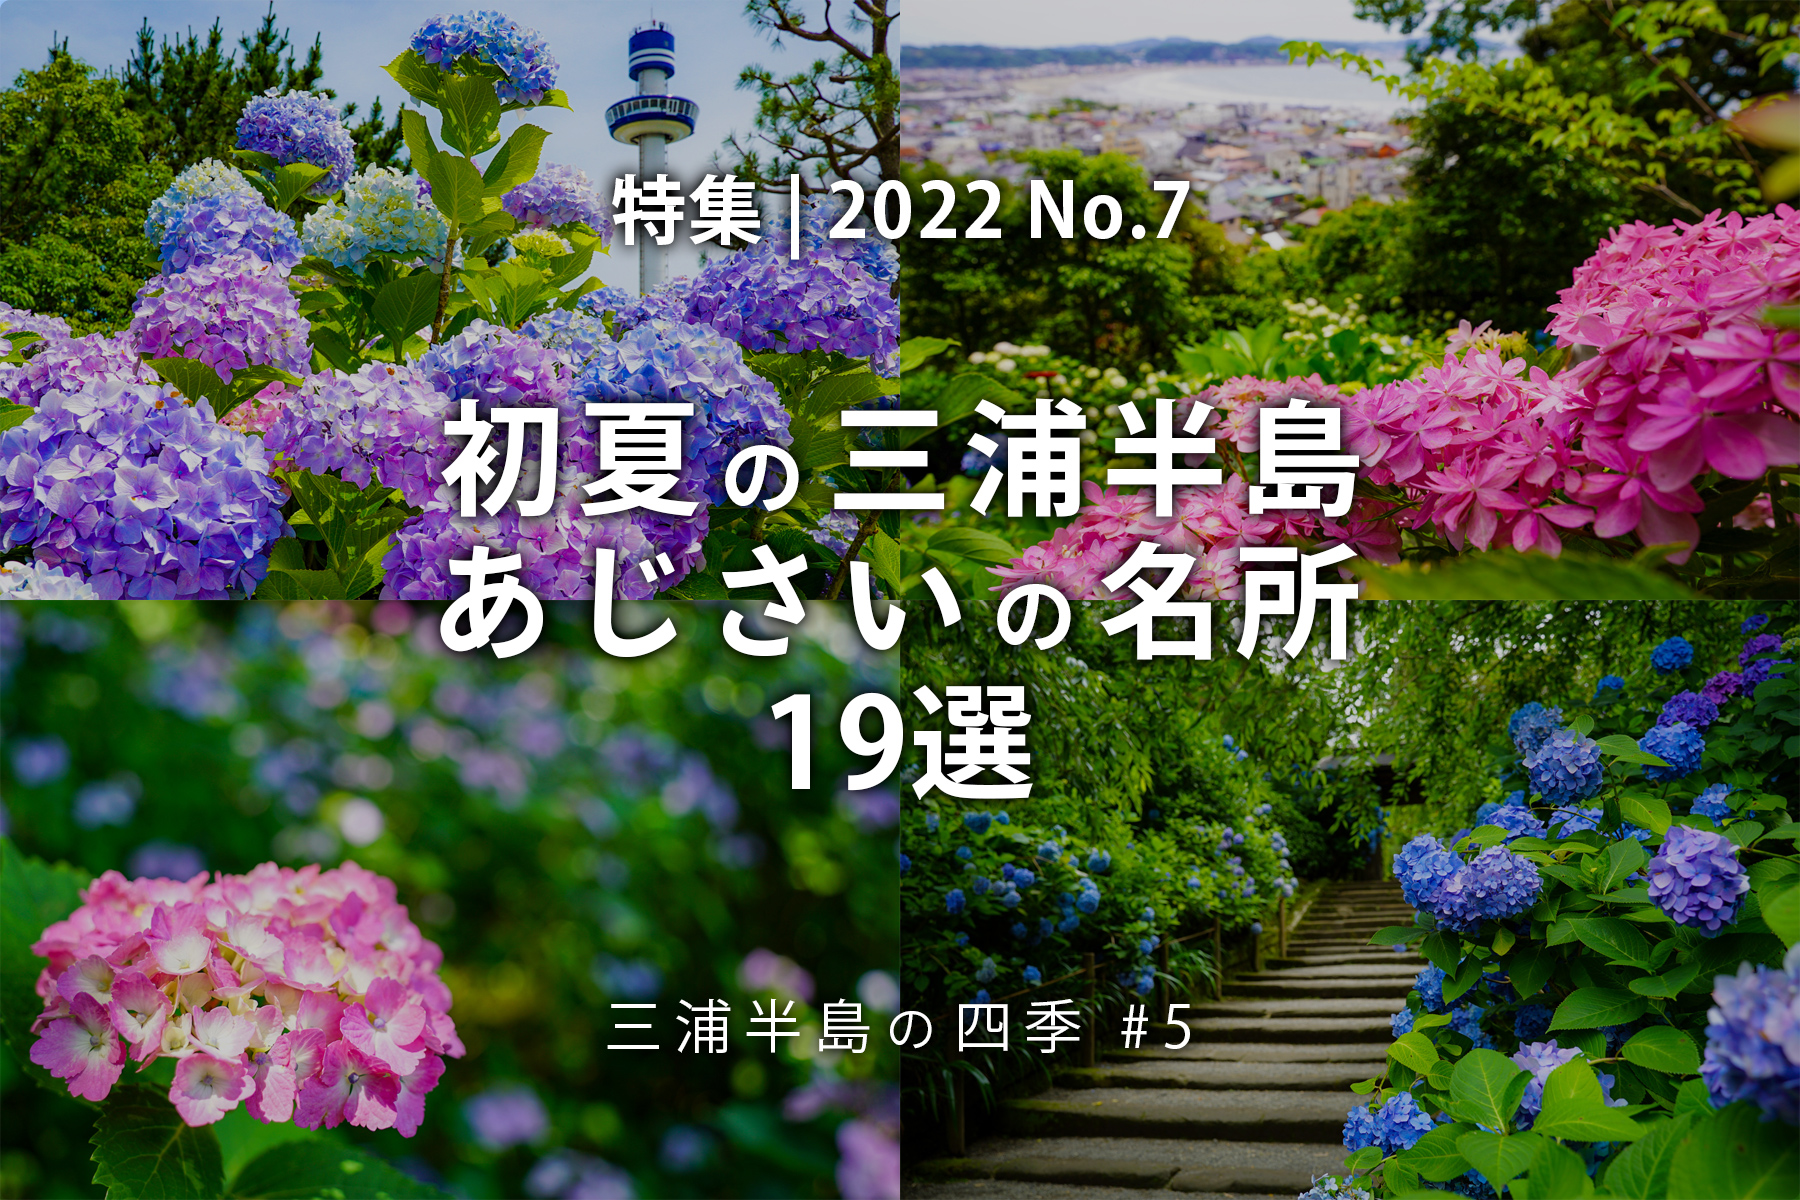 【2022 No.7】特集 | 初夏の三浦半島あじさいの名所19選